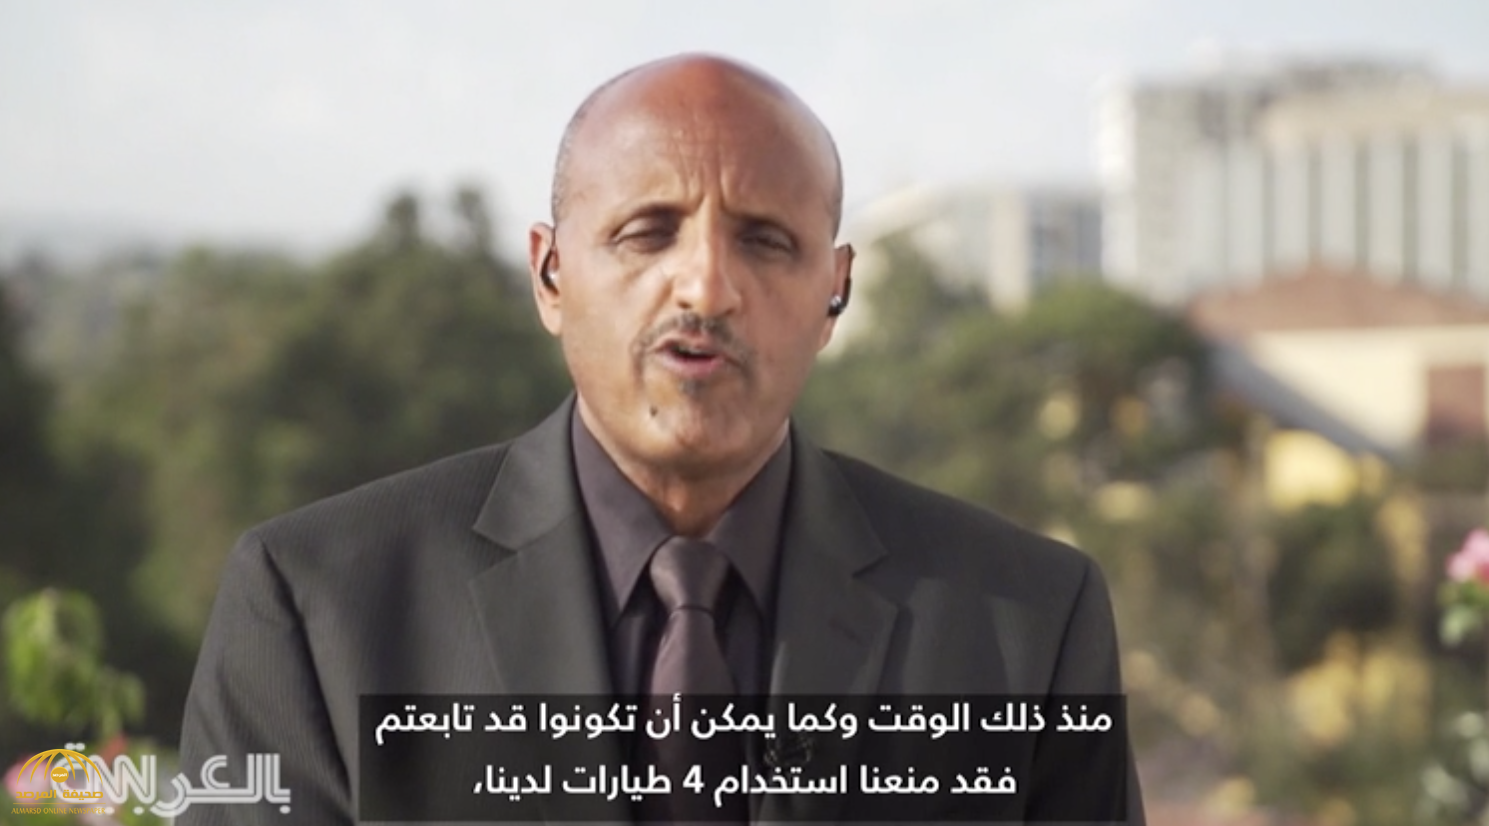 الرئيس التنفيذي للطيران الإثيوبي يشرح تفاصيل سقوط الطائرة المنكوبة